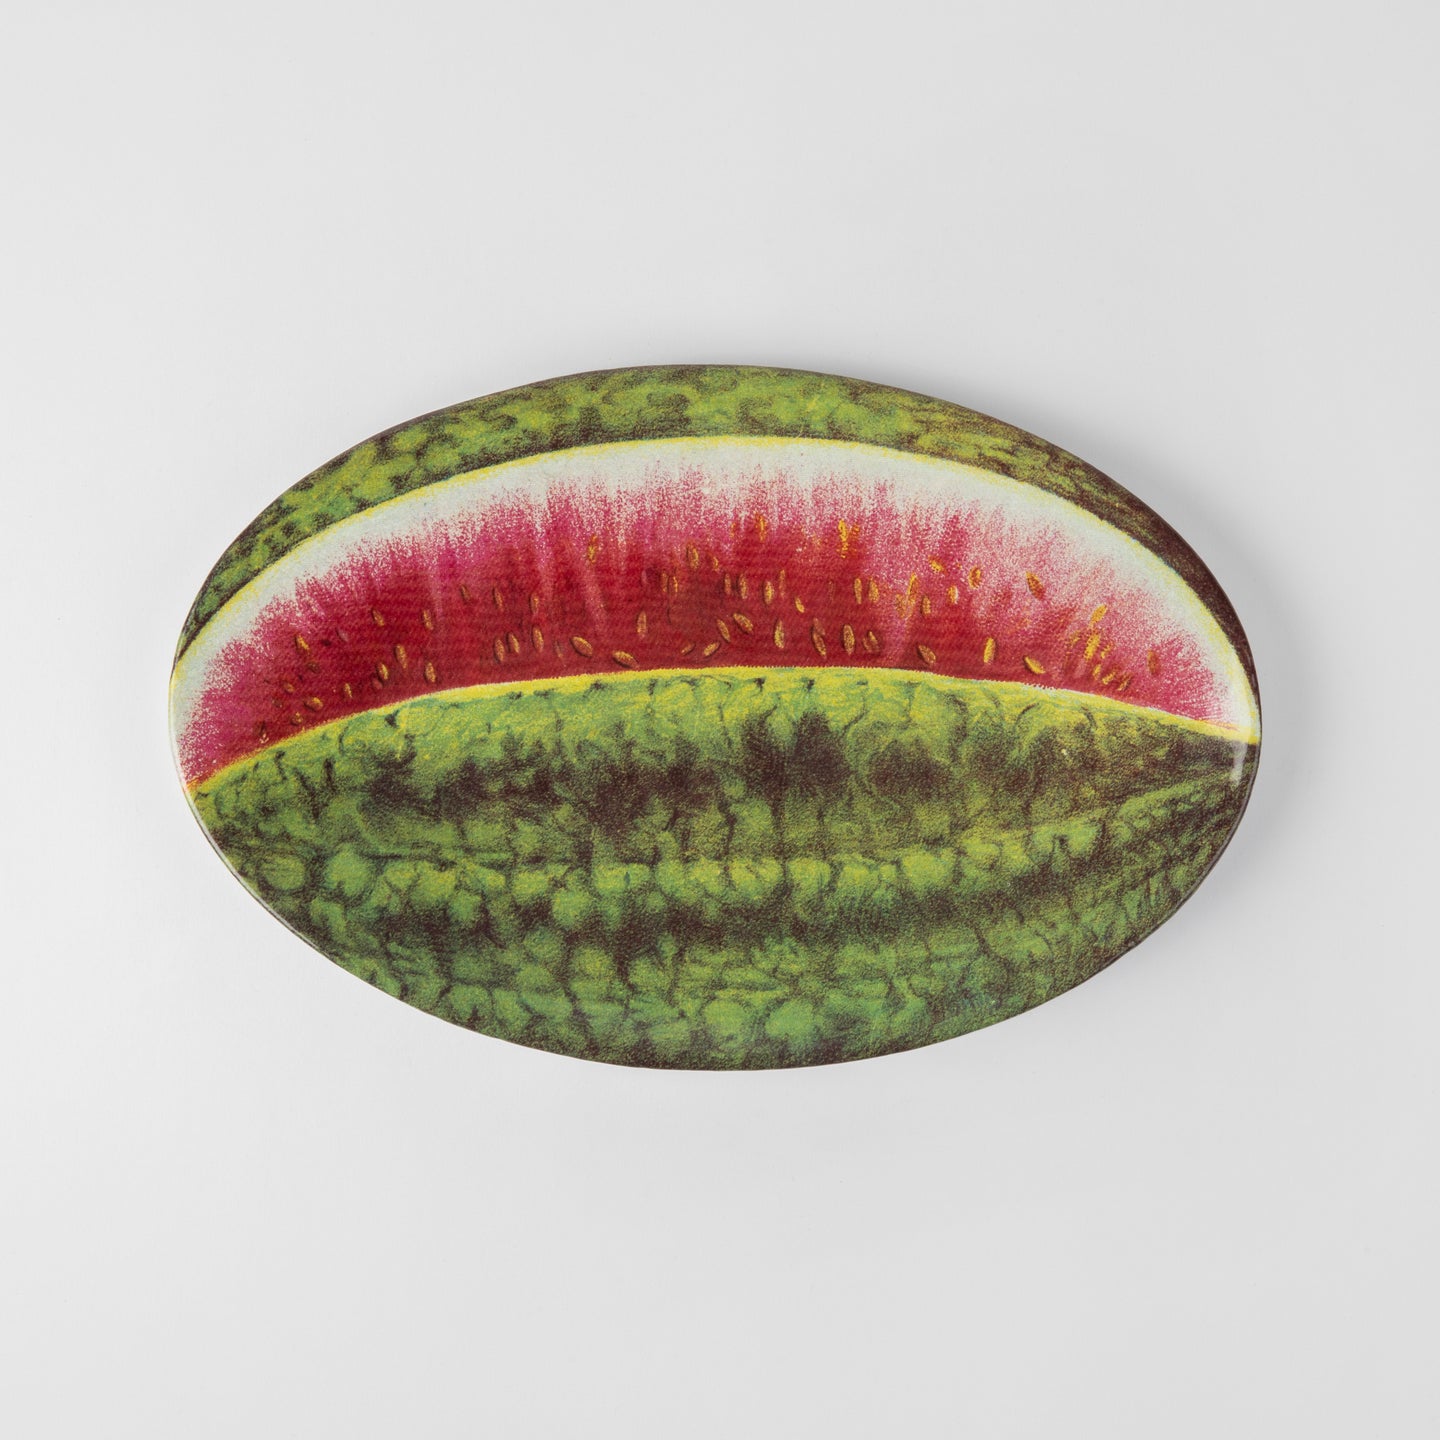 Astier de Villatte <br> John Derian Watermelon Platter